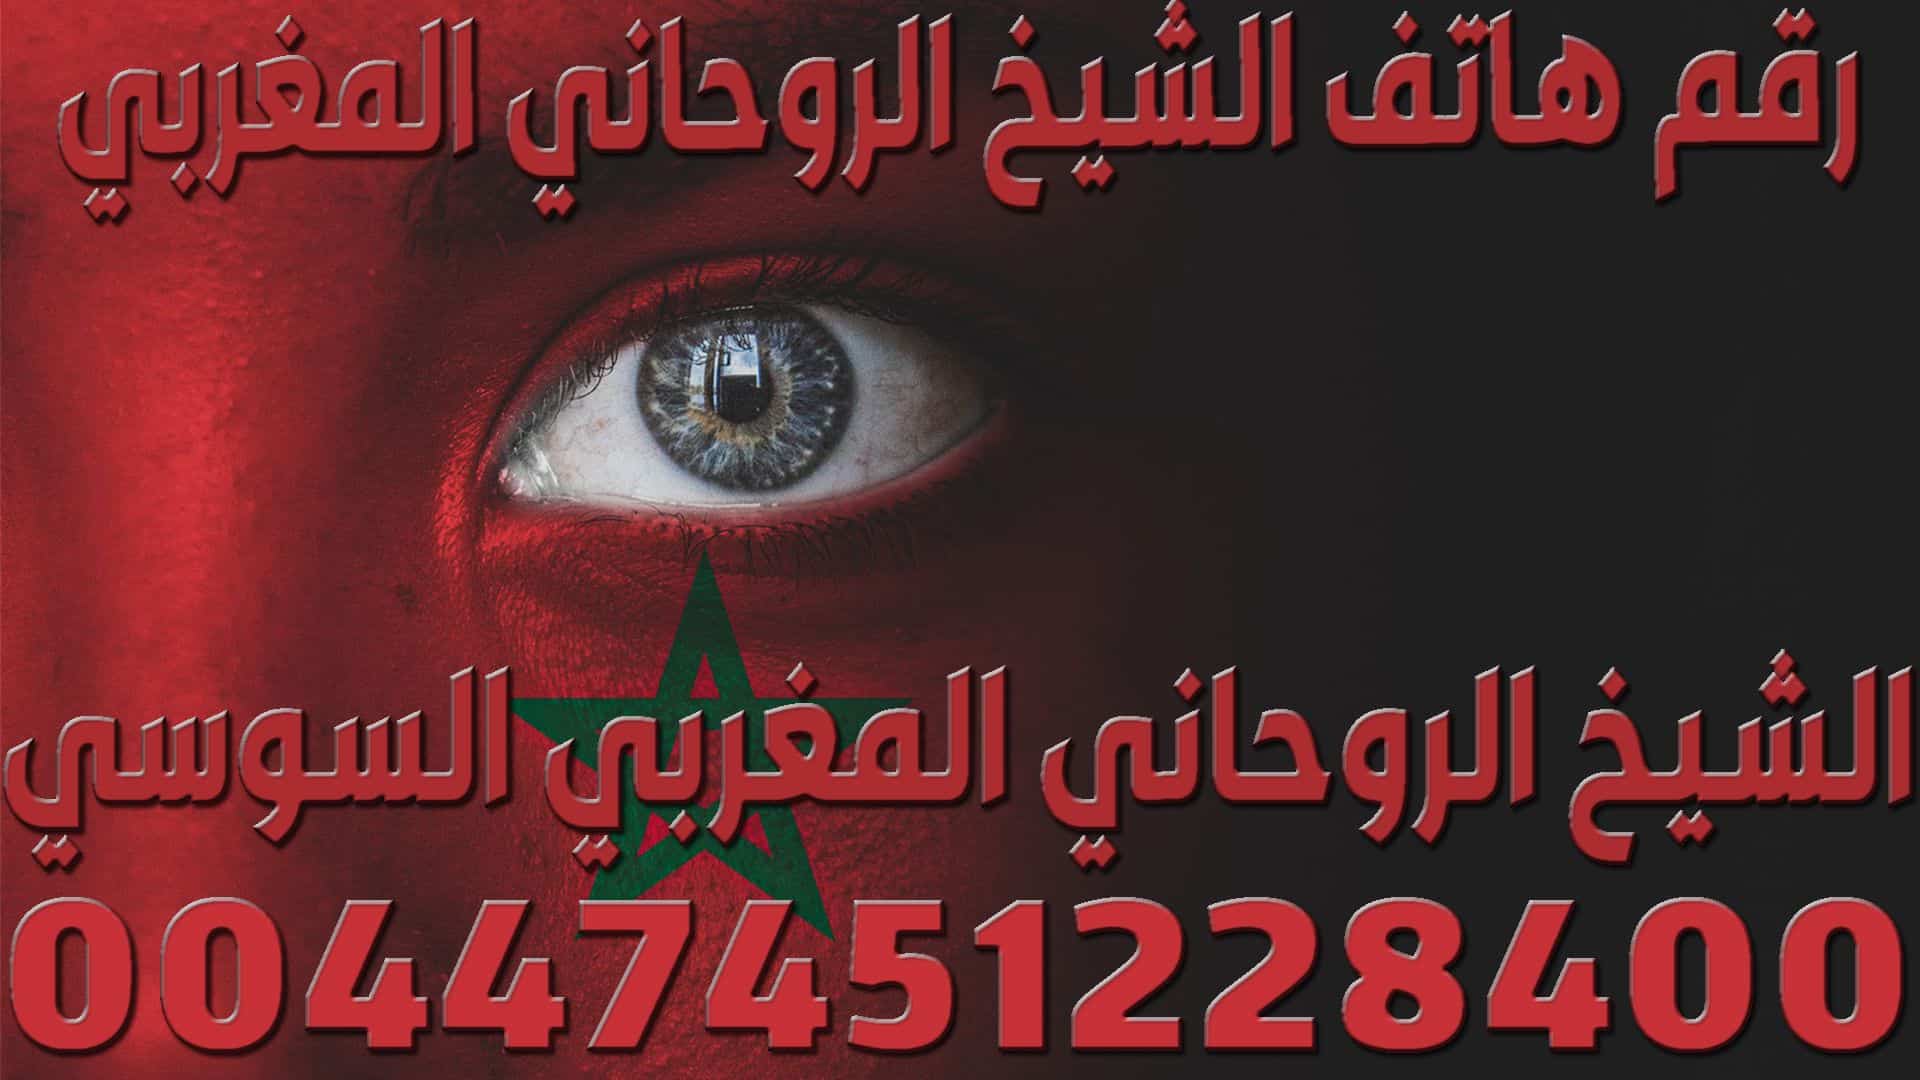 رقم هاتف الشيخ الروحاني المغربي